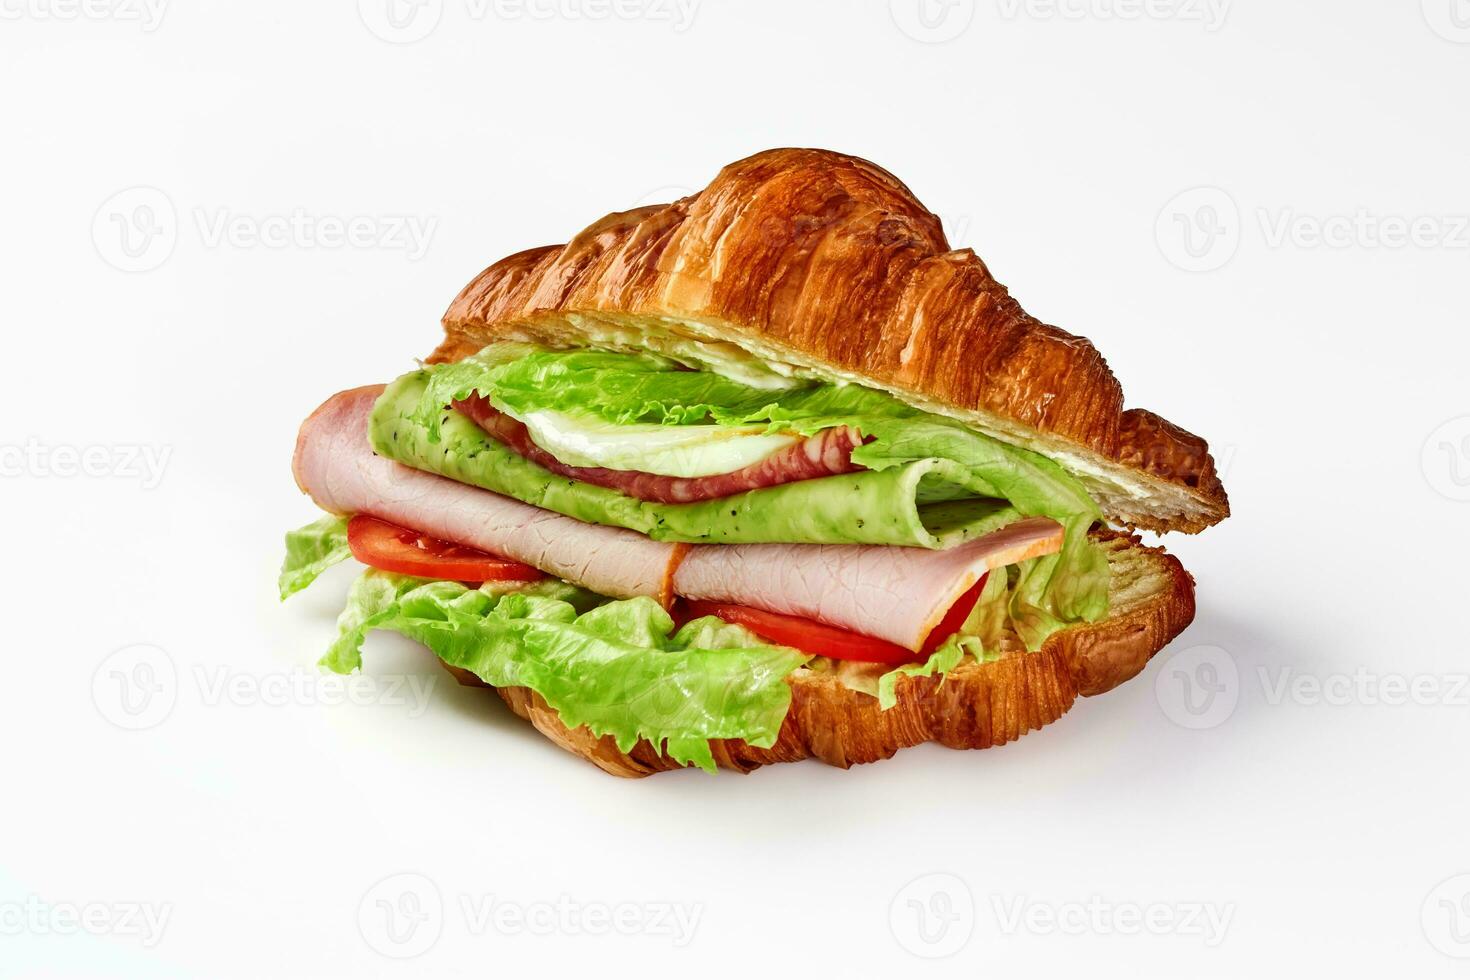 sandwich de bouffée croissant avec jambon, salami, vert fromage, frit Oeuf et des légumes photo